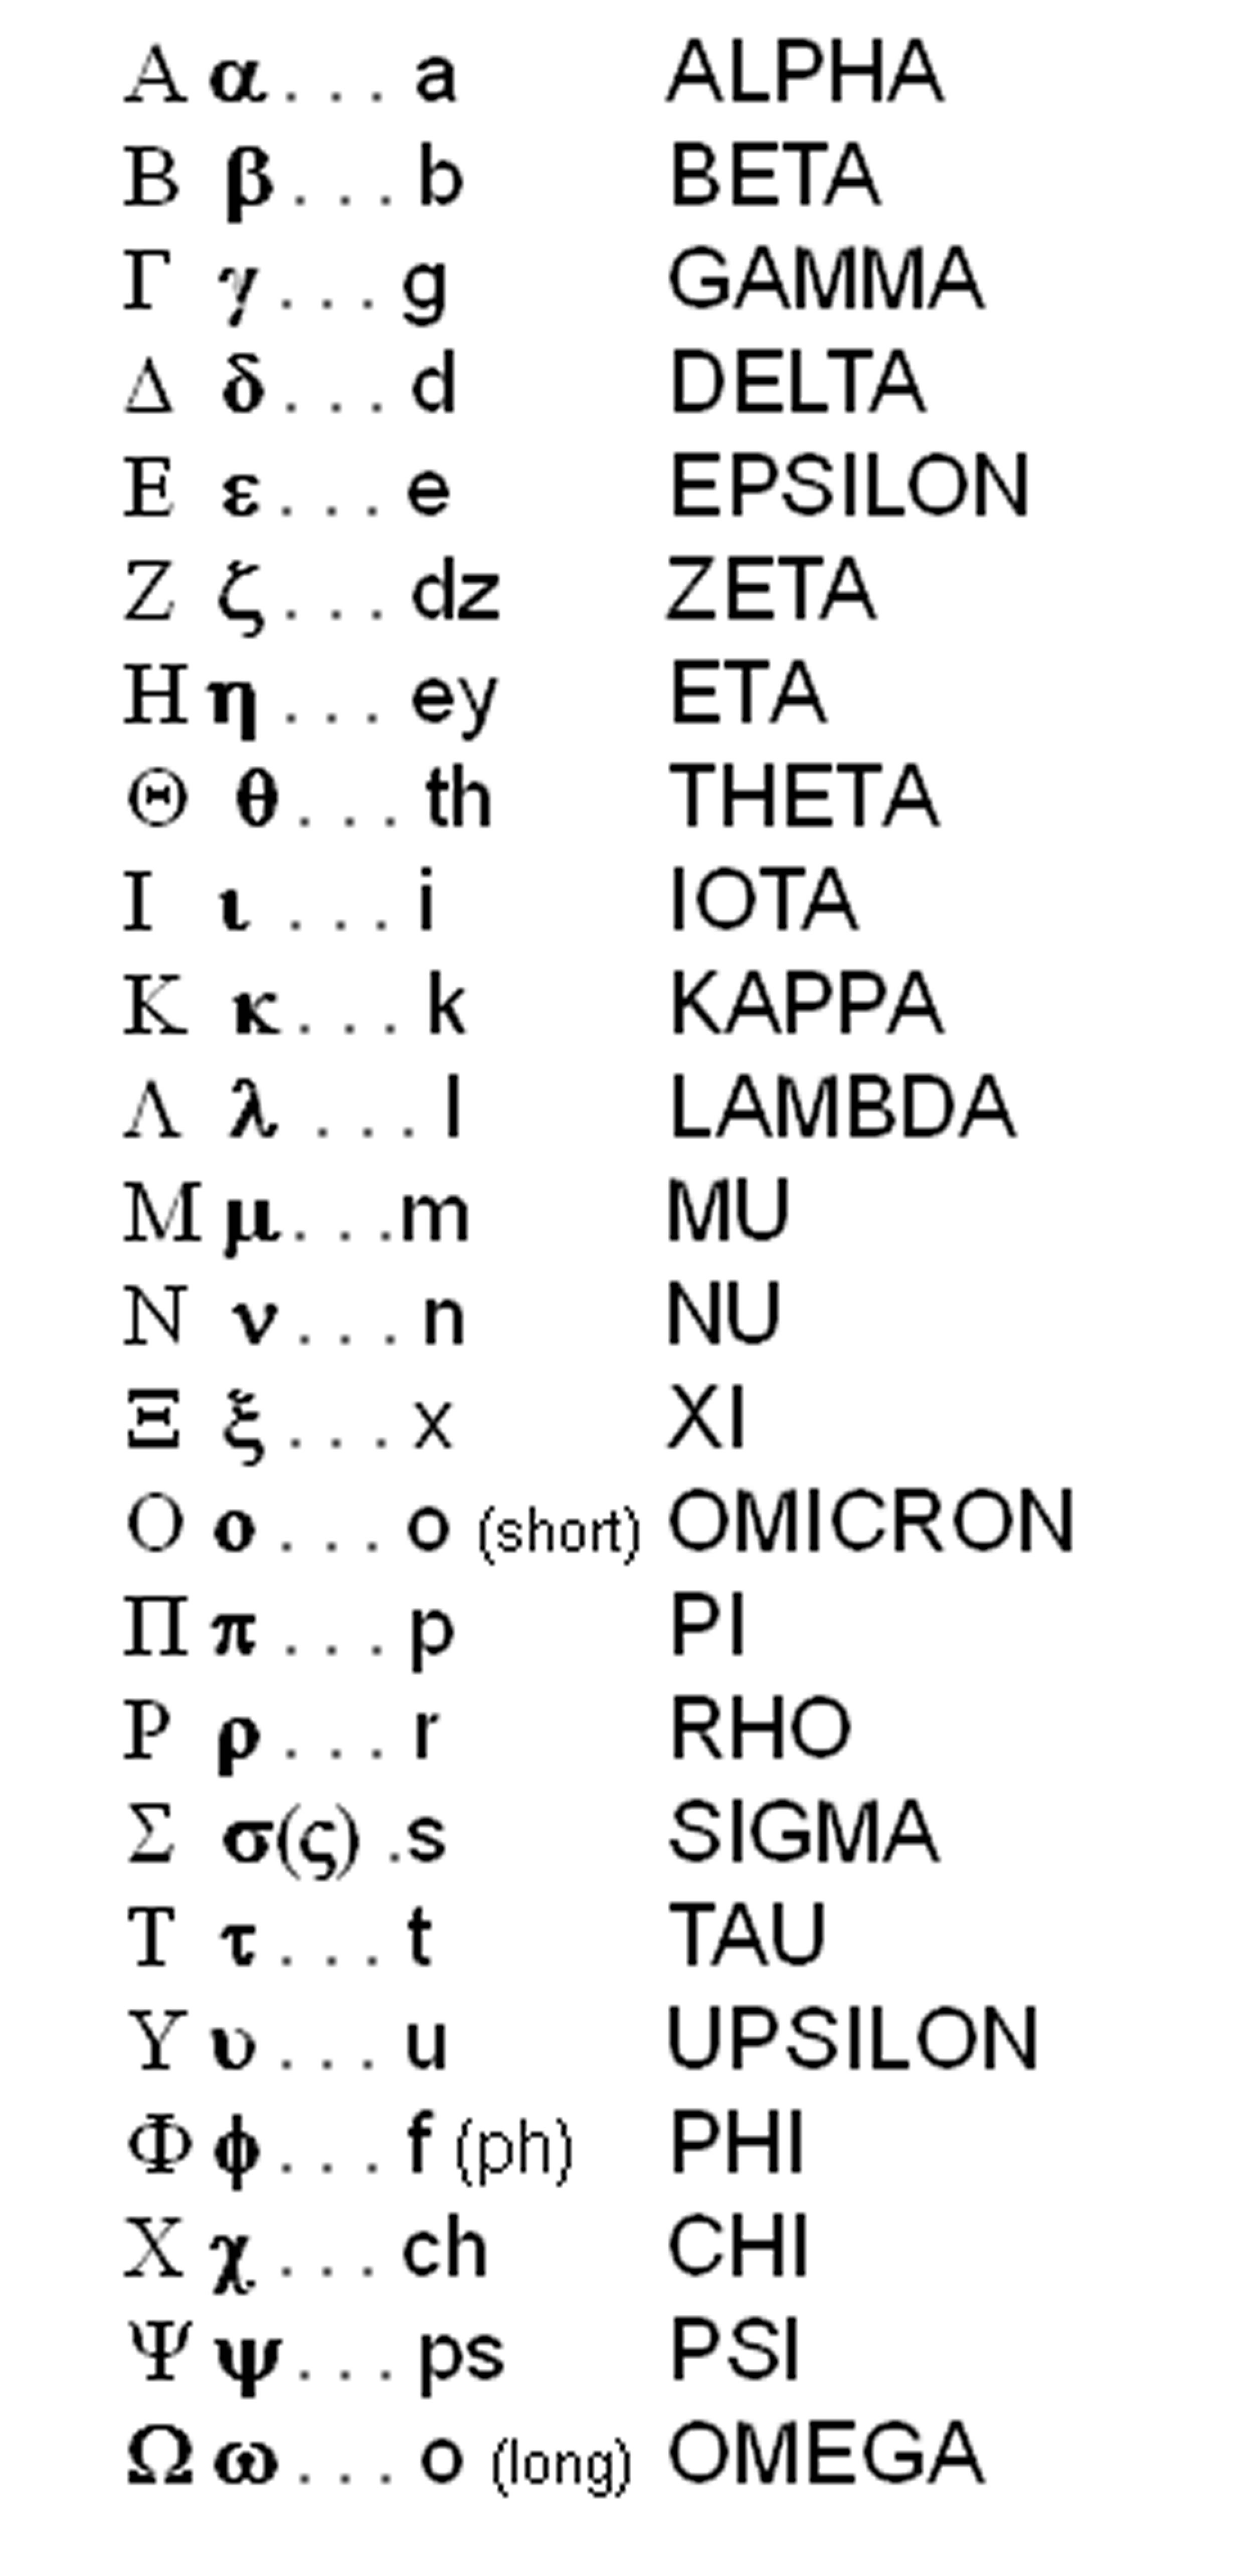 Greek letters V